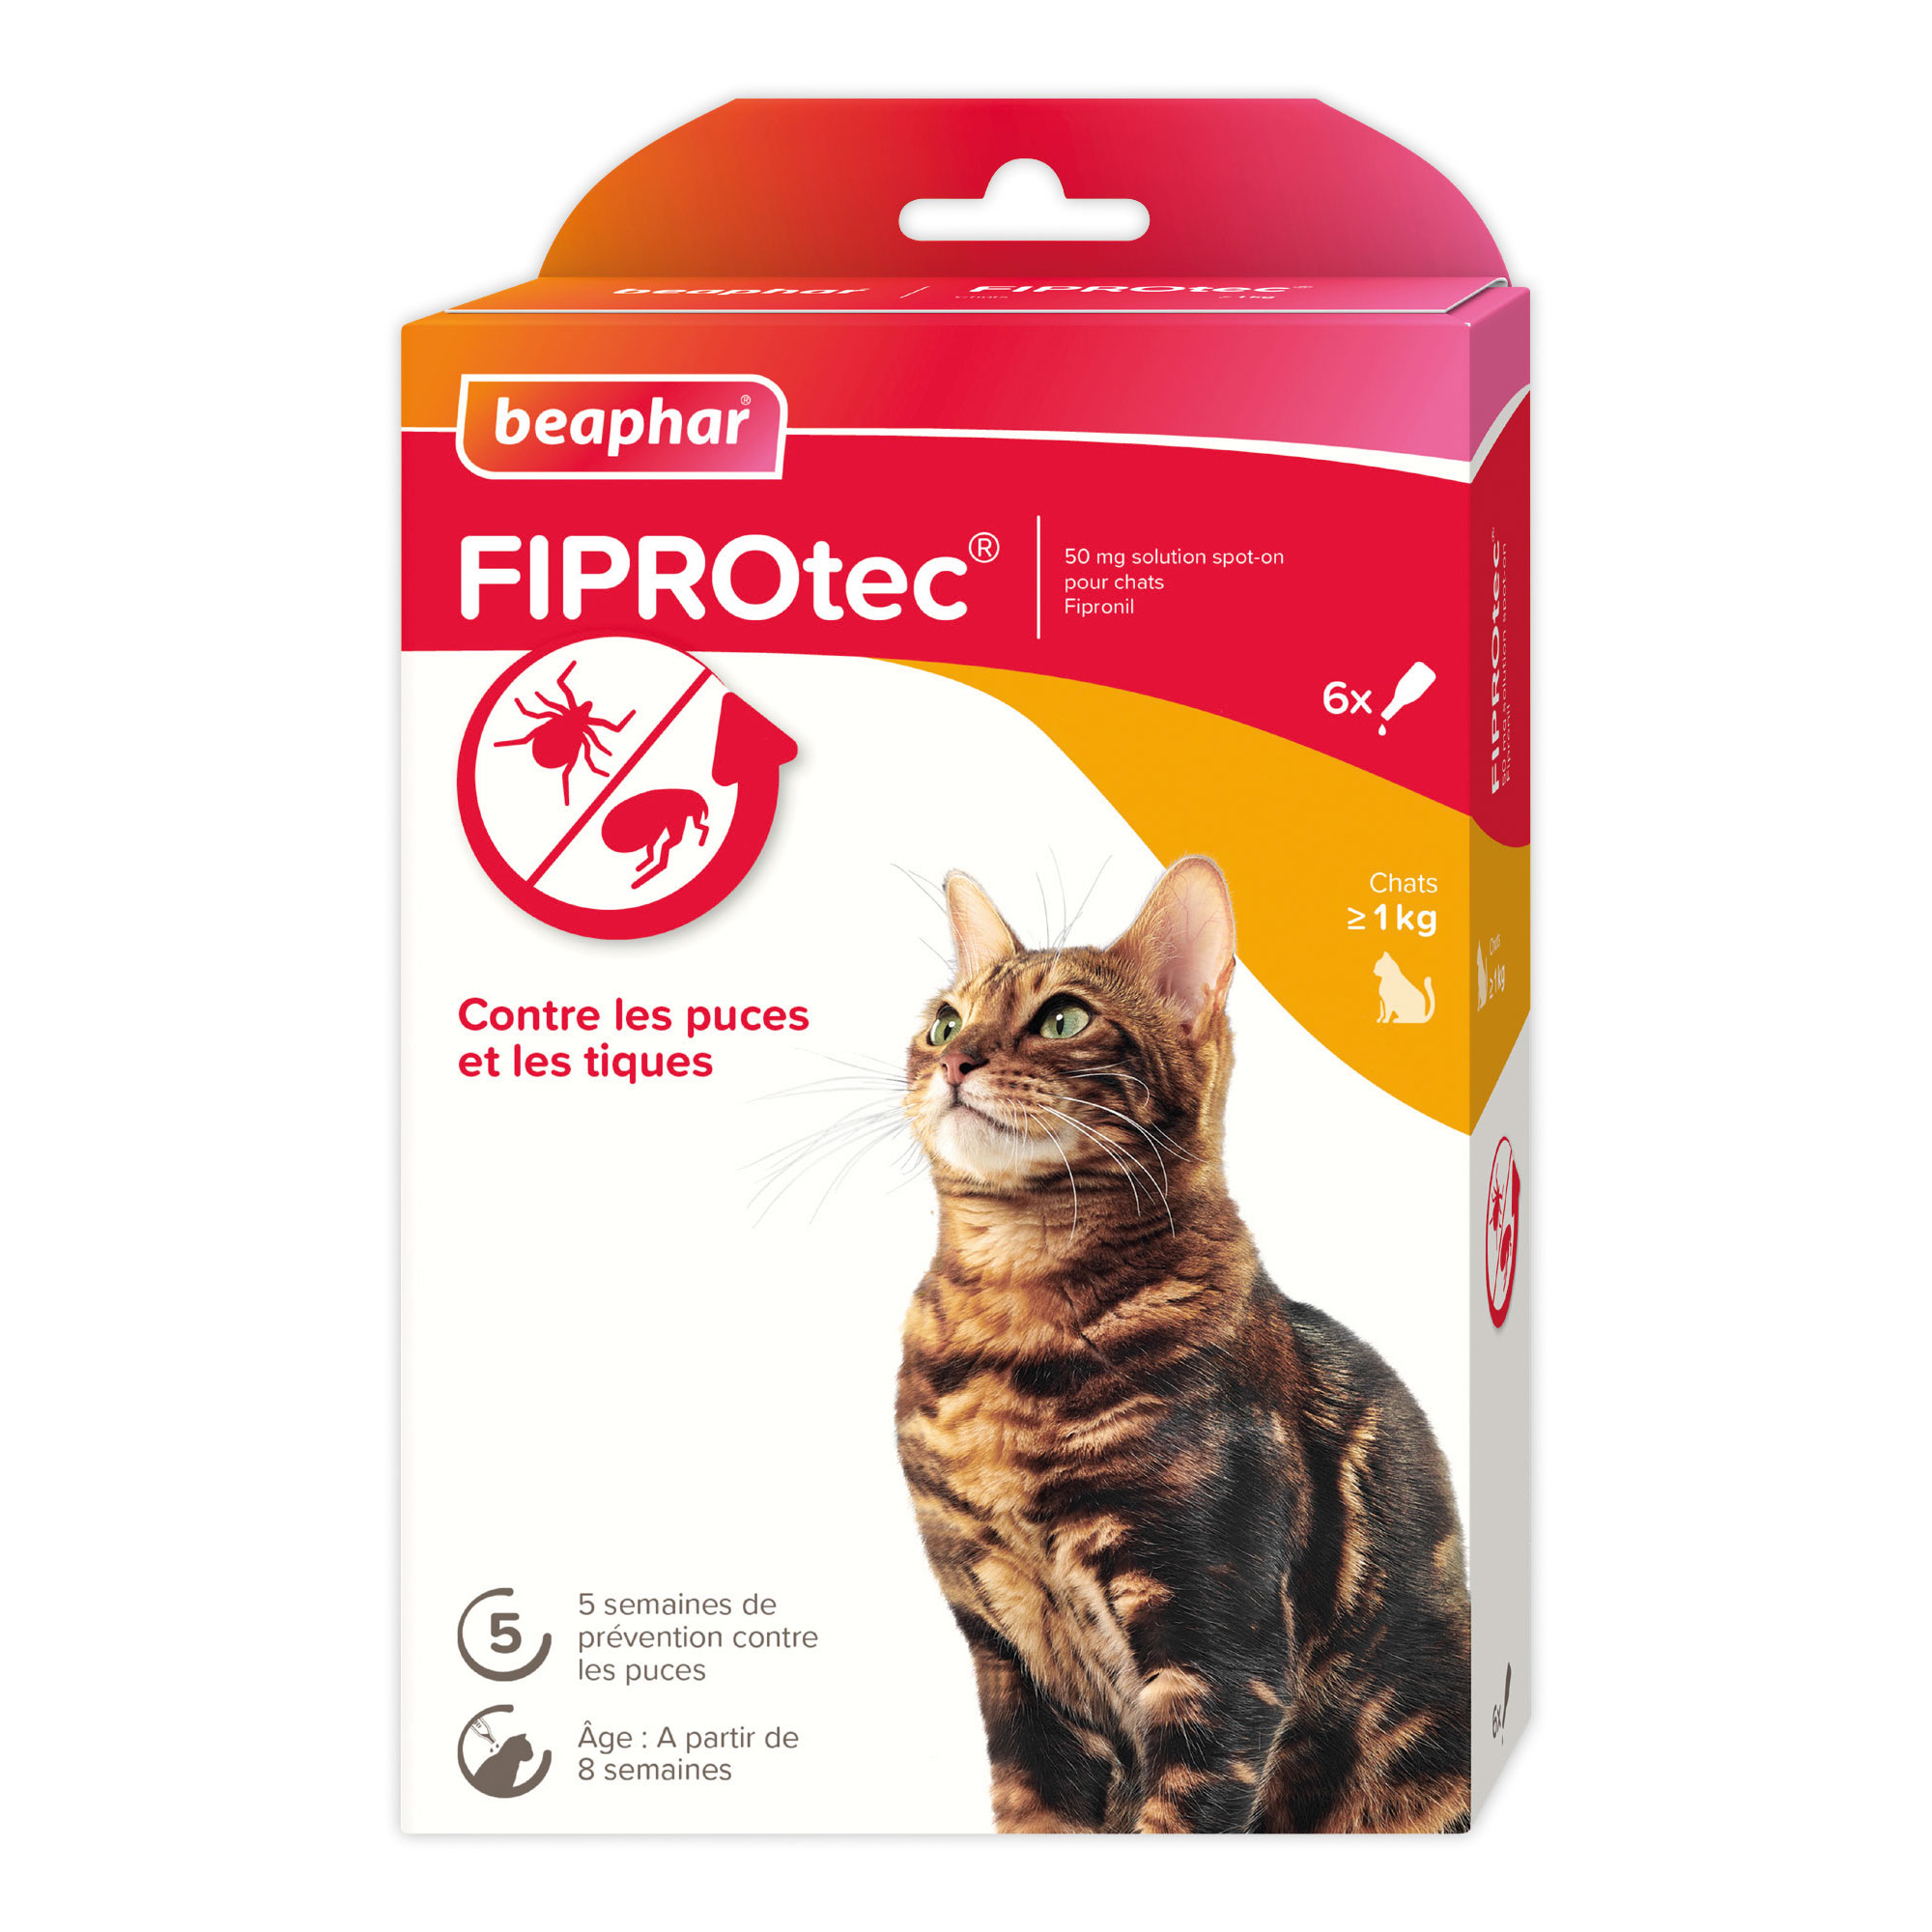 FIPROtec Spot-on oplossing voor katten met fipronil